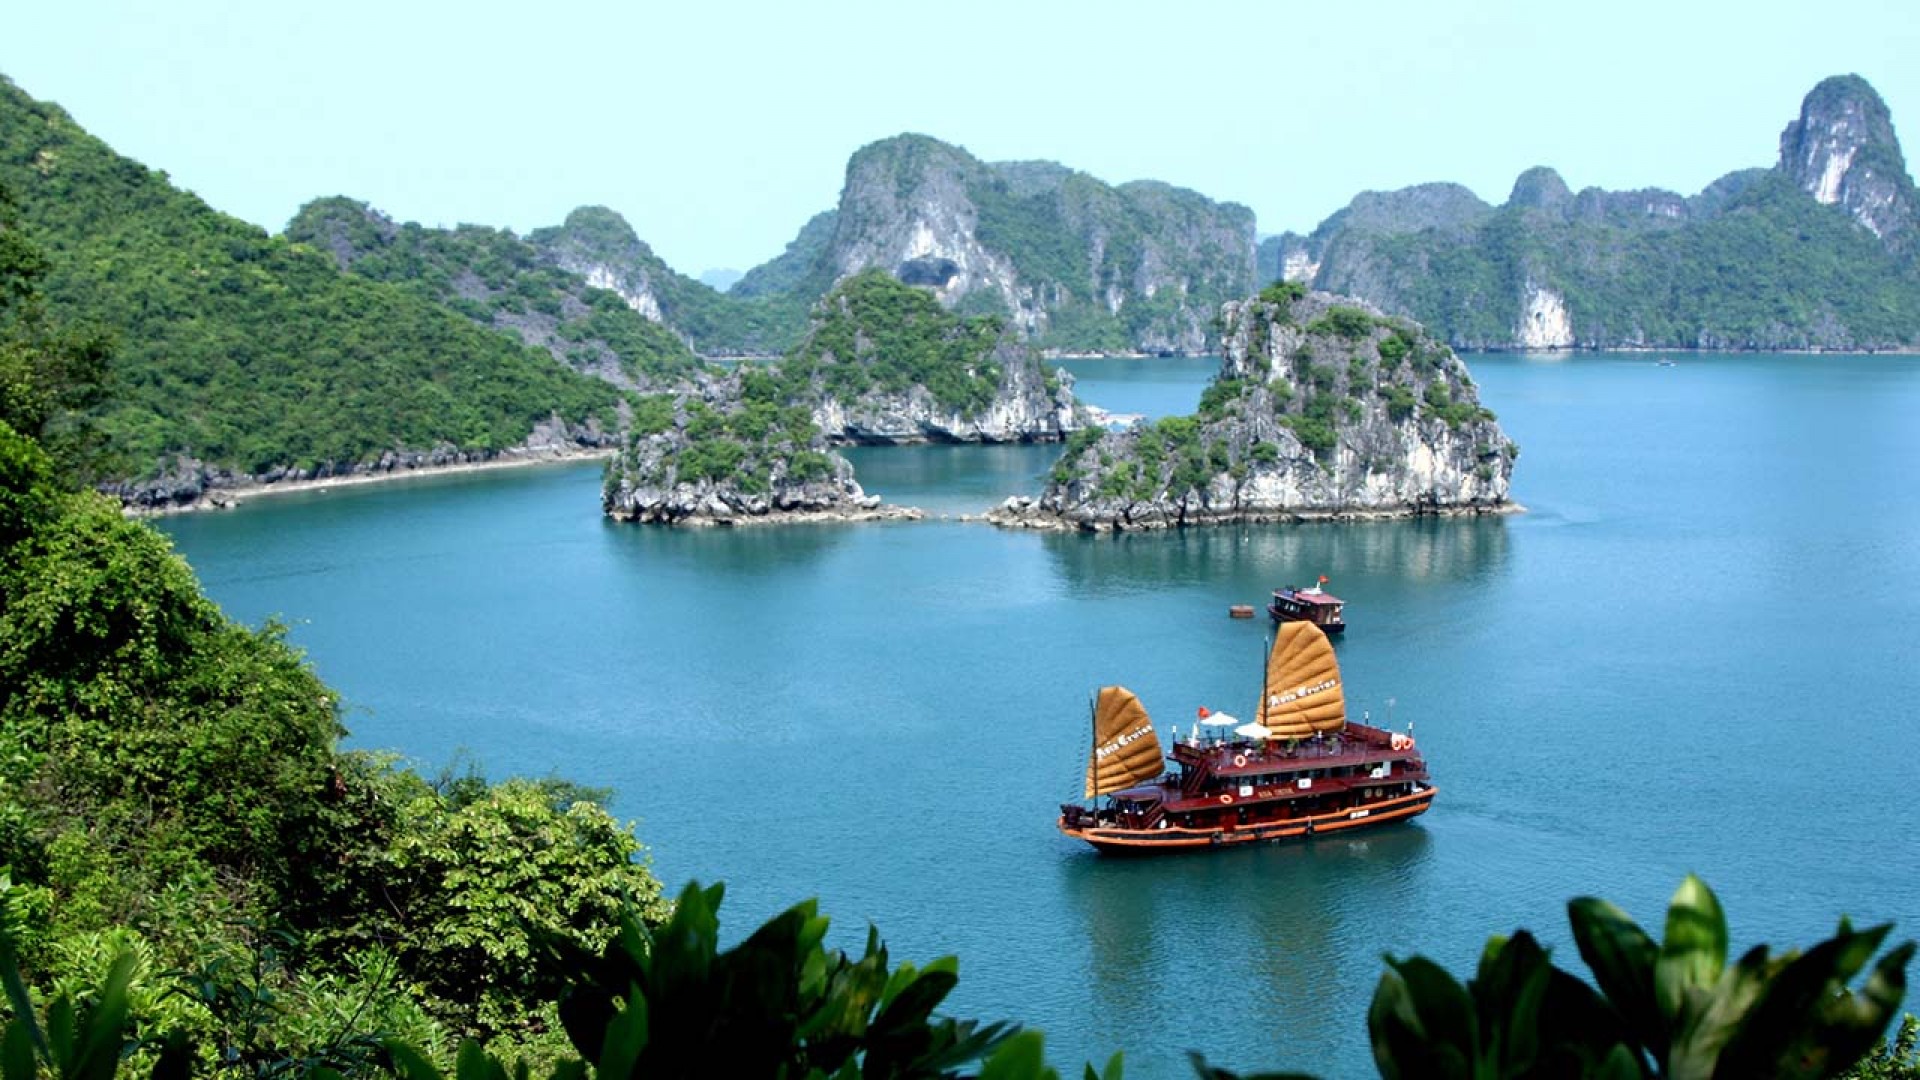 Giới thiệu về du lịch Việt Nam bằng tiếng Anh: đưa xứ sở “Rồng Tiên” đến với năm Châu (P1)